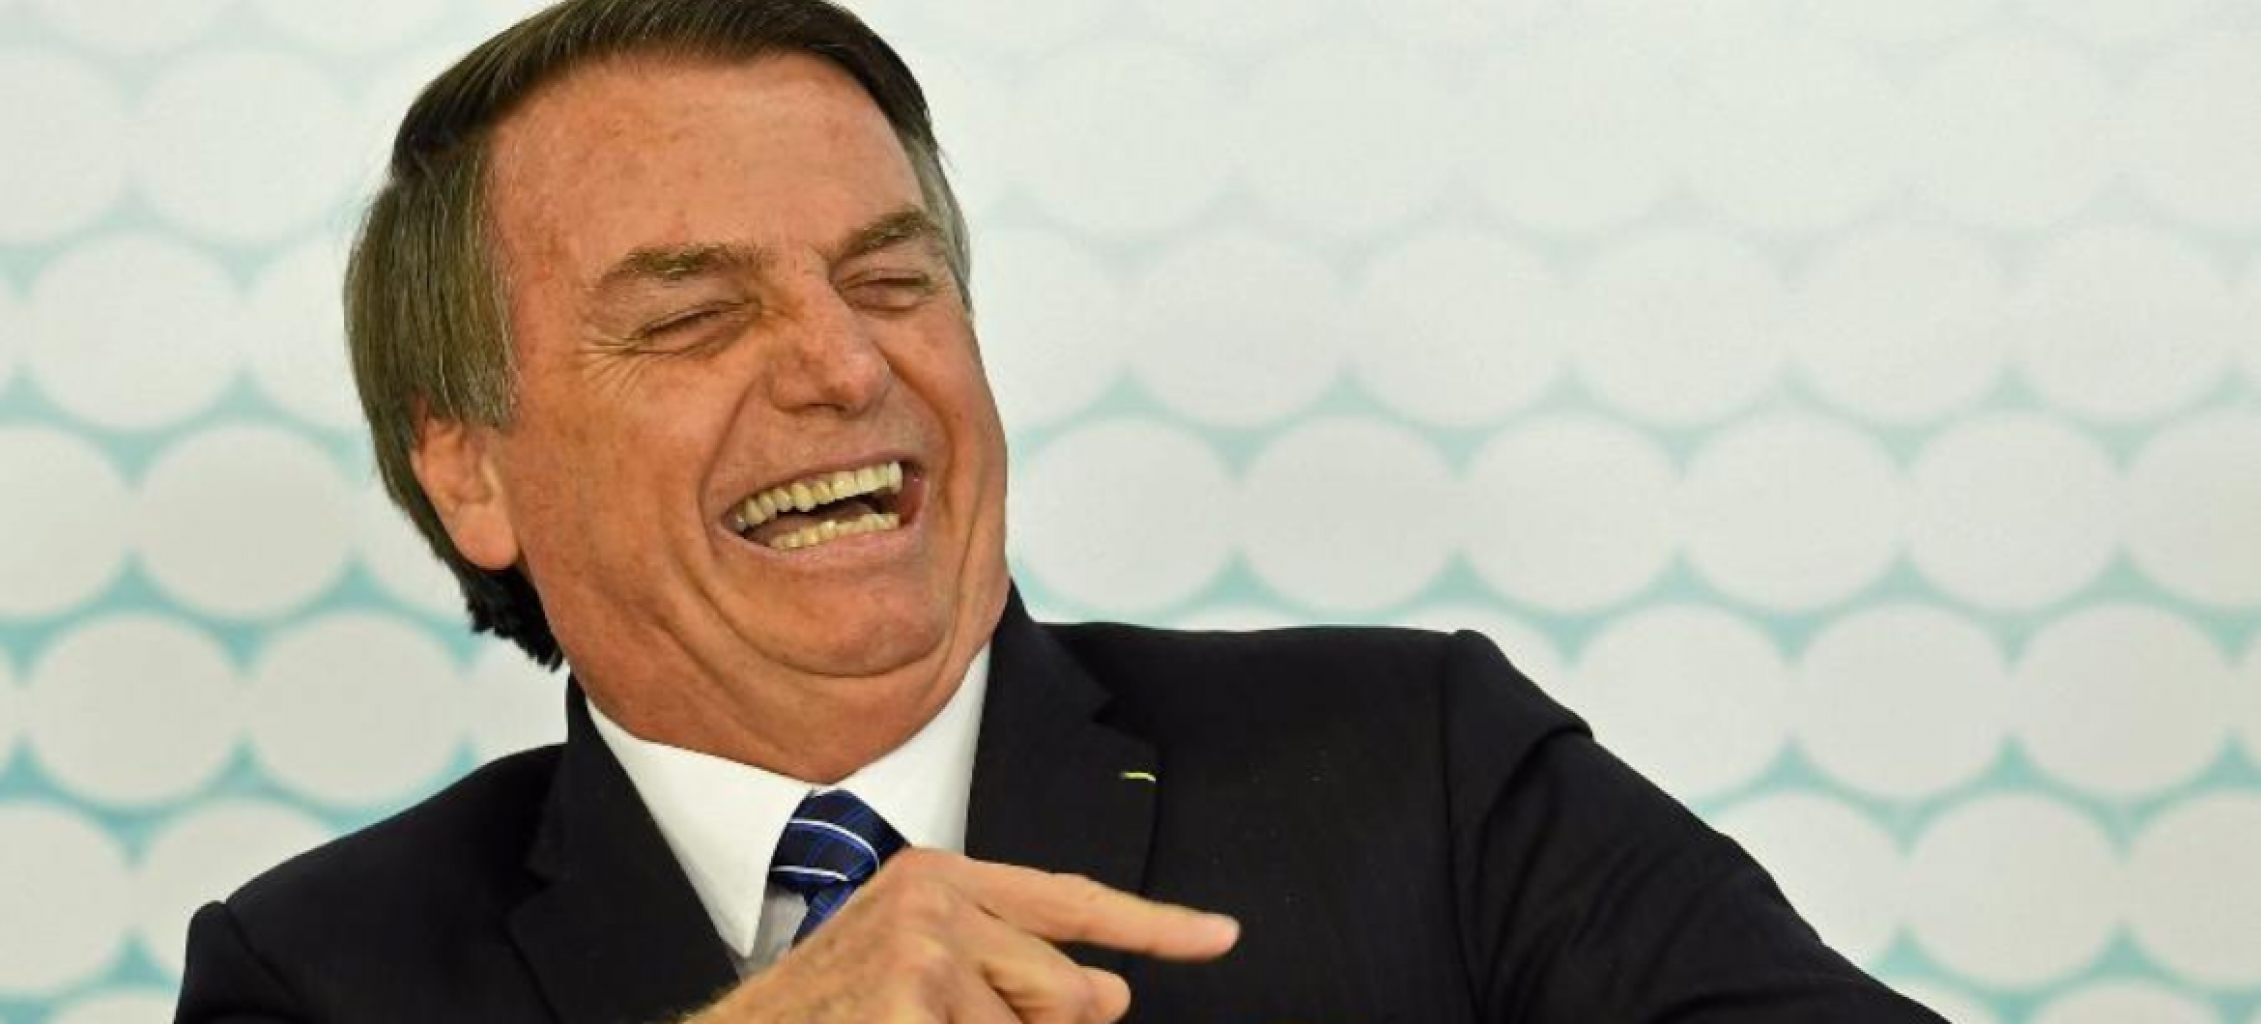 Bolsonaro ganha milhões com doações de apoiadores, feitos de bobos